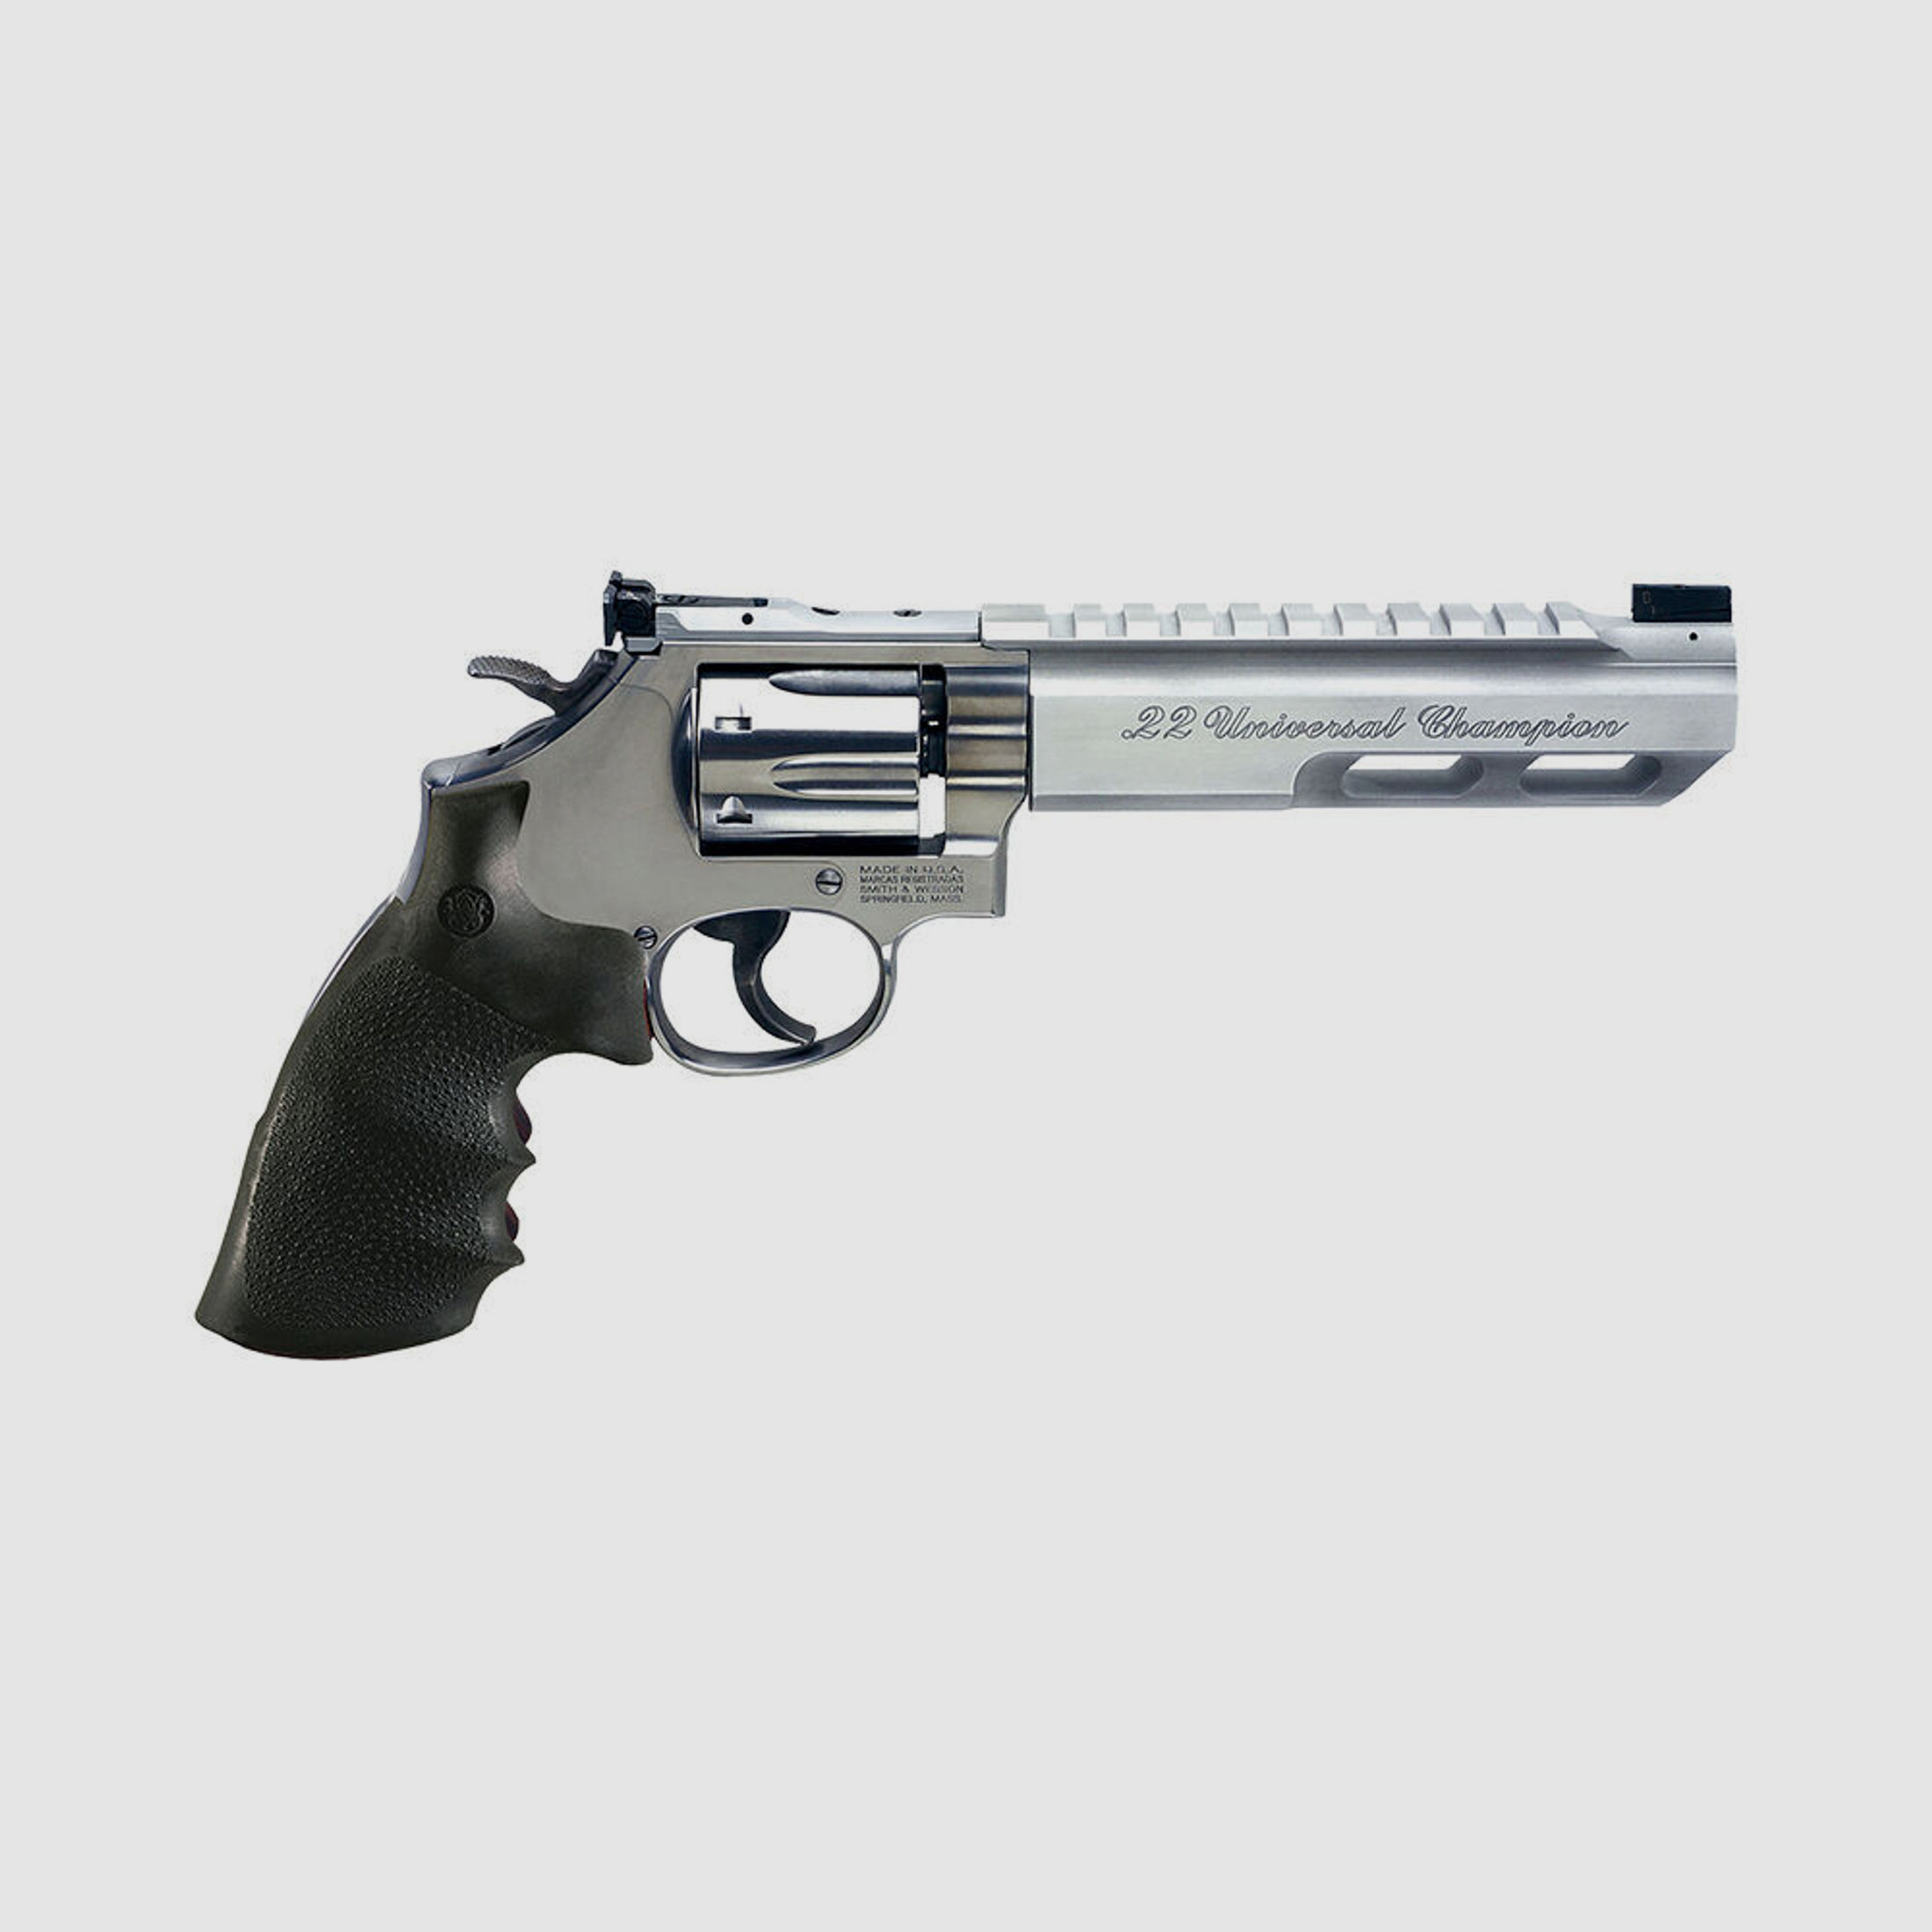 Smith & Wesson Revolver 617 Universal Champion Kaliber .22lr - 6 Schuss 6" Lauf, Stainless